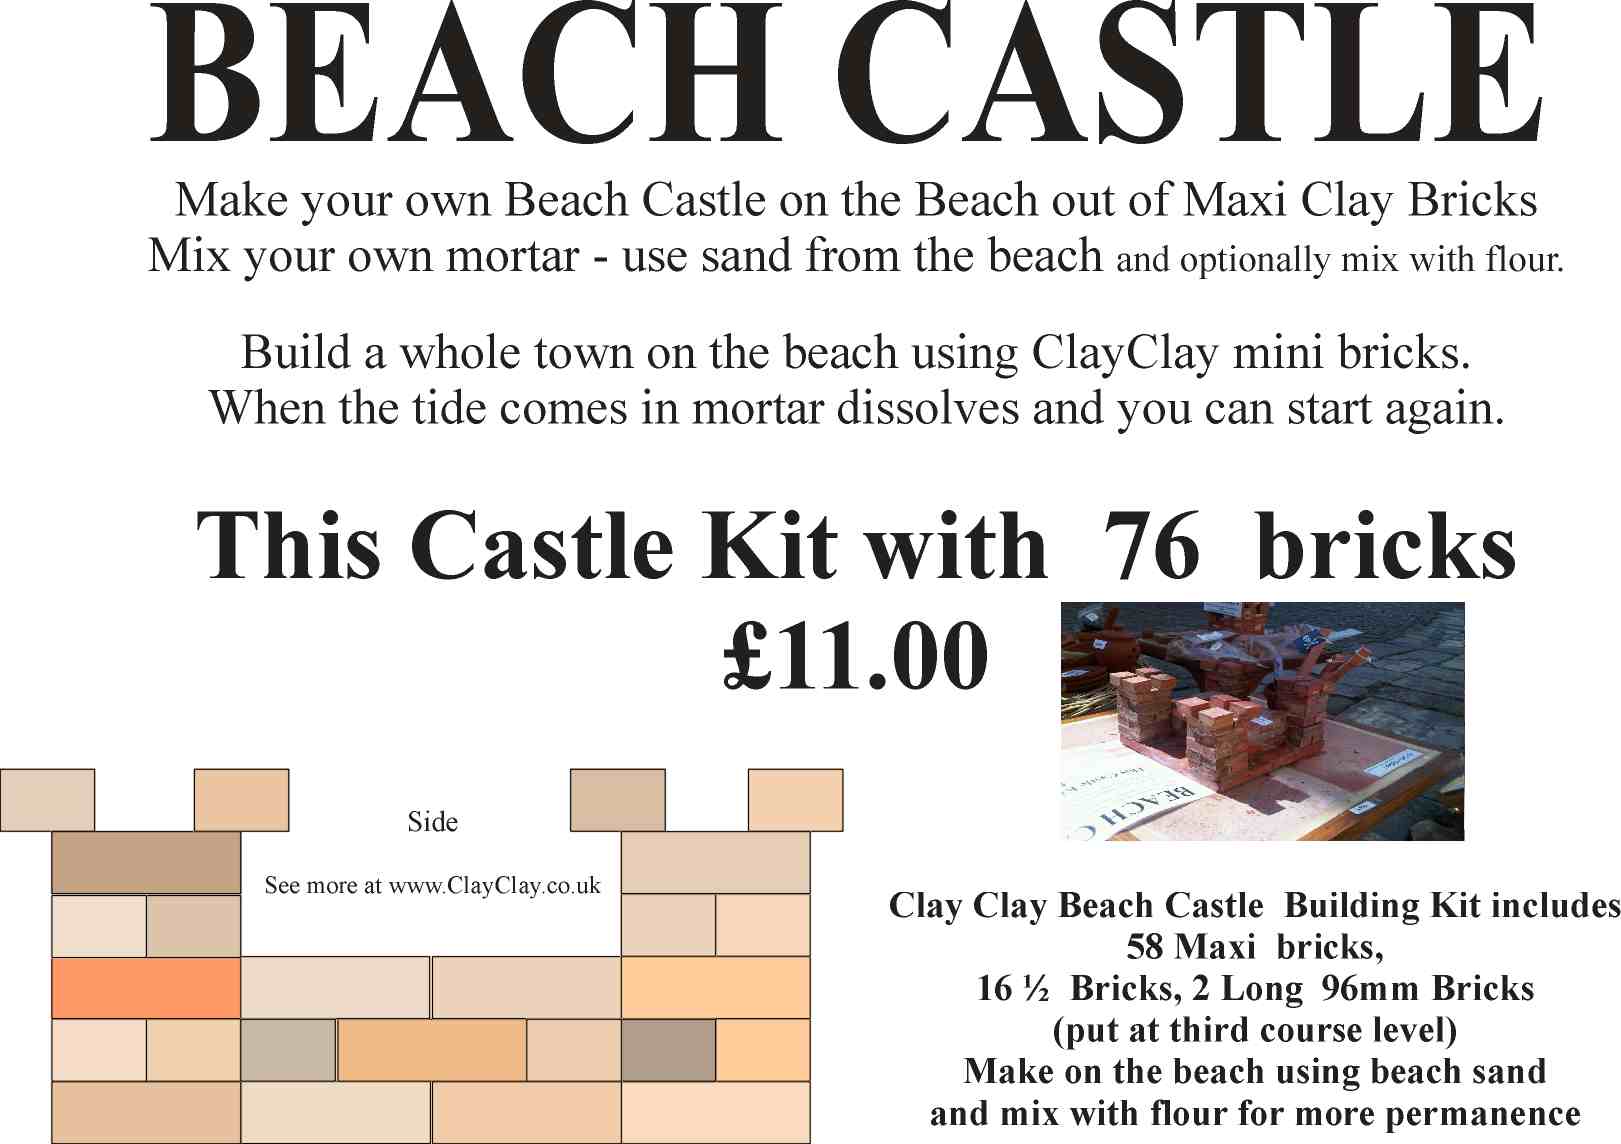 Beach Castle Kit Maxi Bricks. Make own the beach and use Beach sand mixed with flour as mortar.